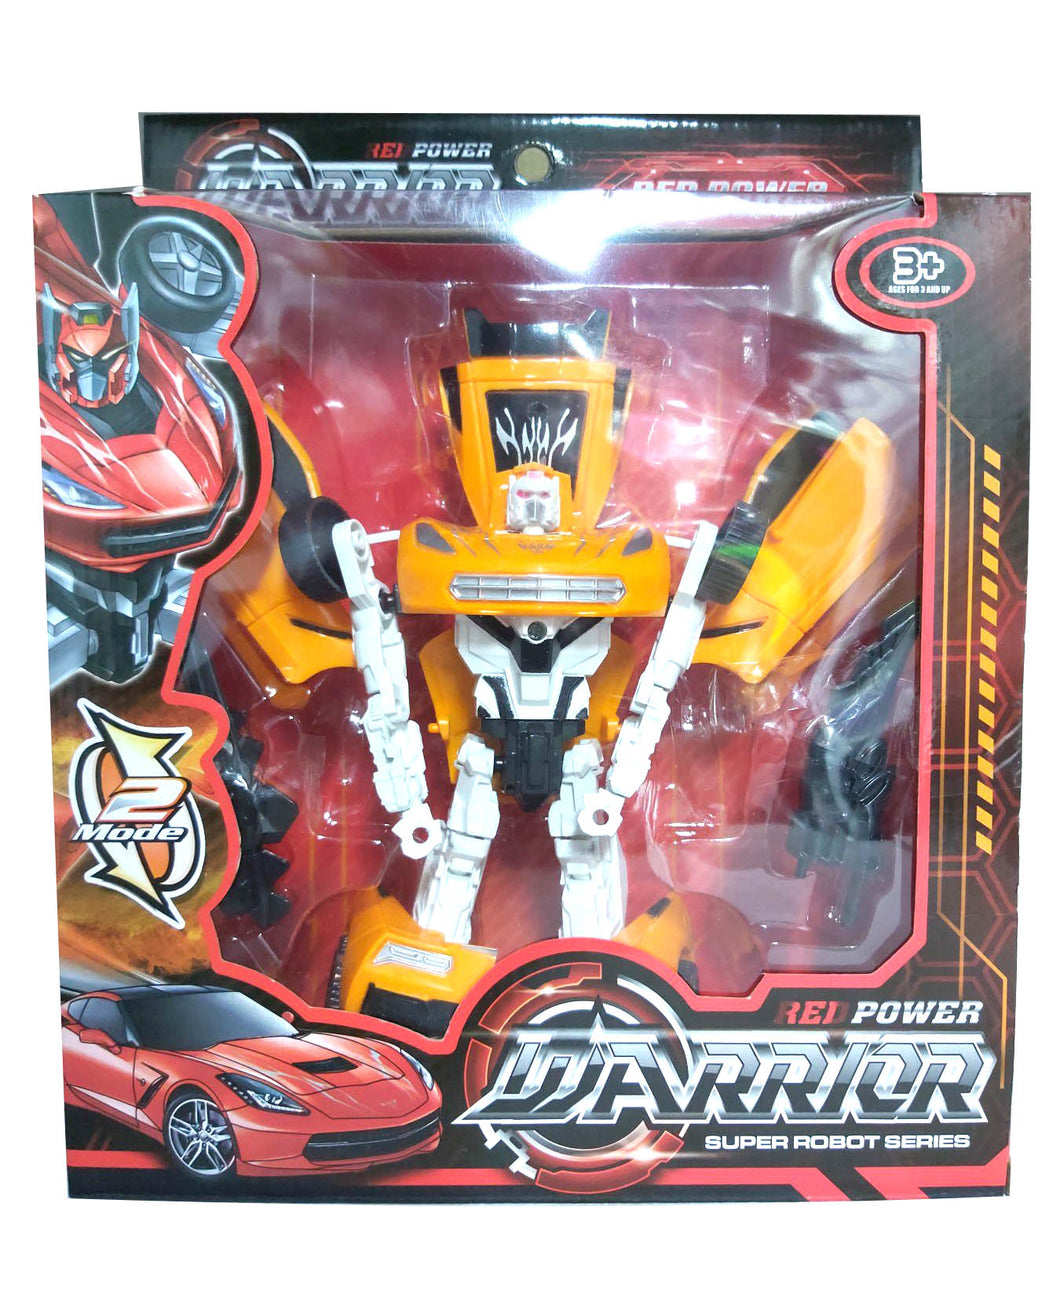 Red Warrior Super Robot Series